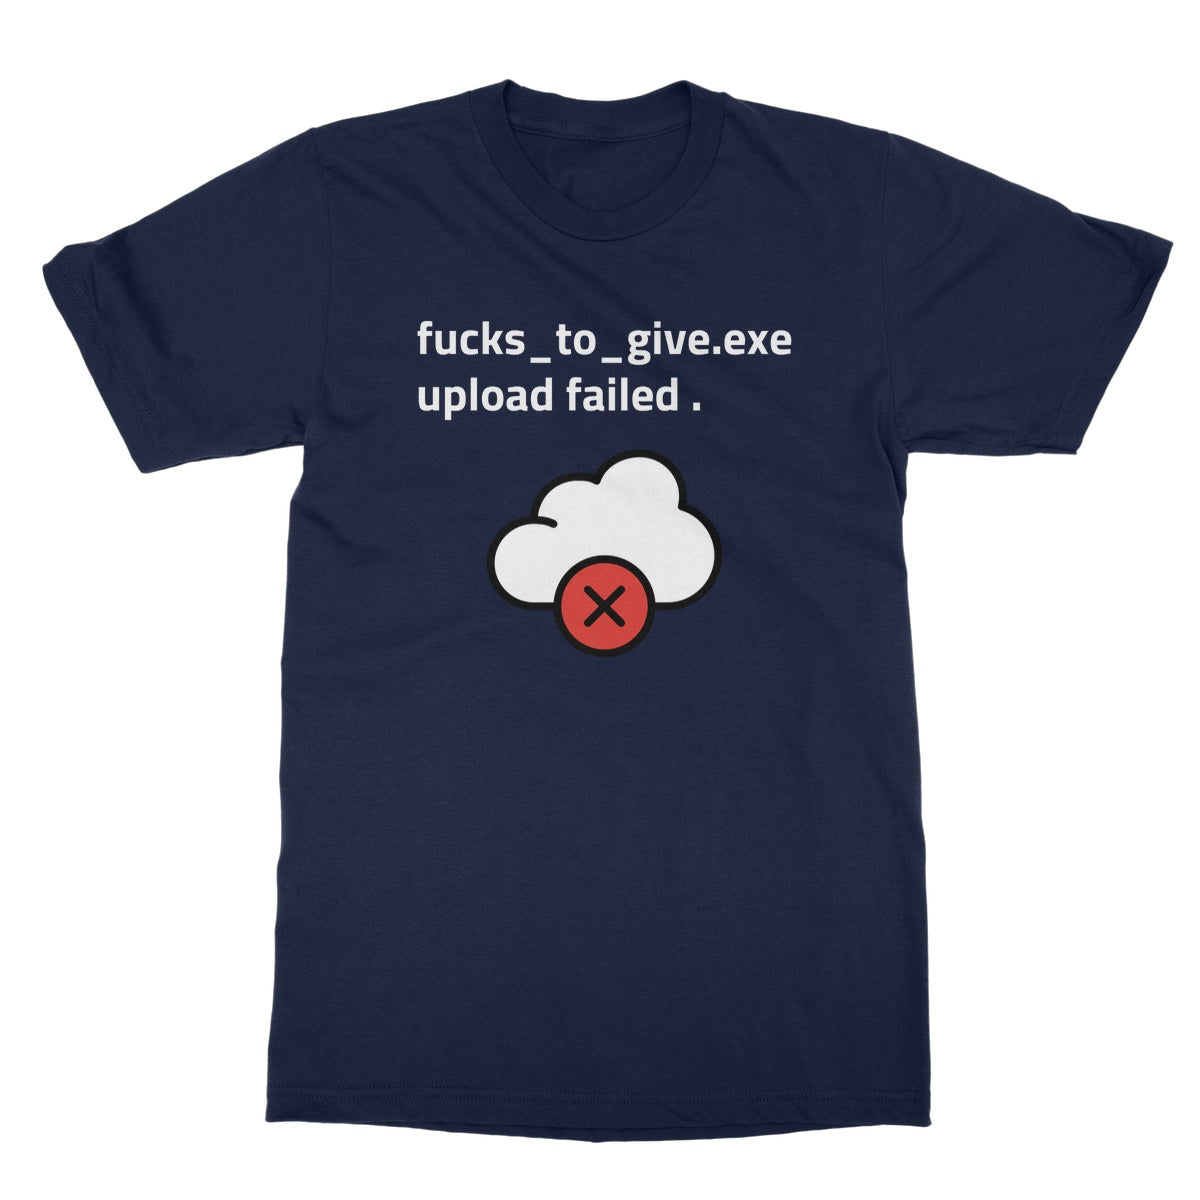 fucks to give upload failed t shirt navy